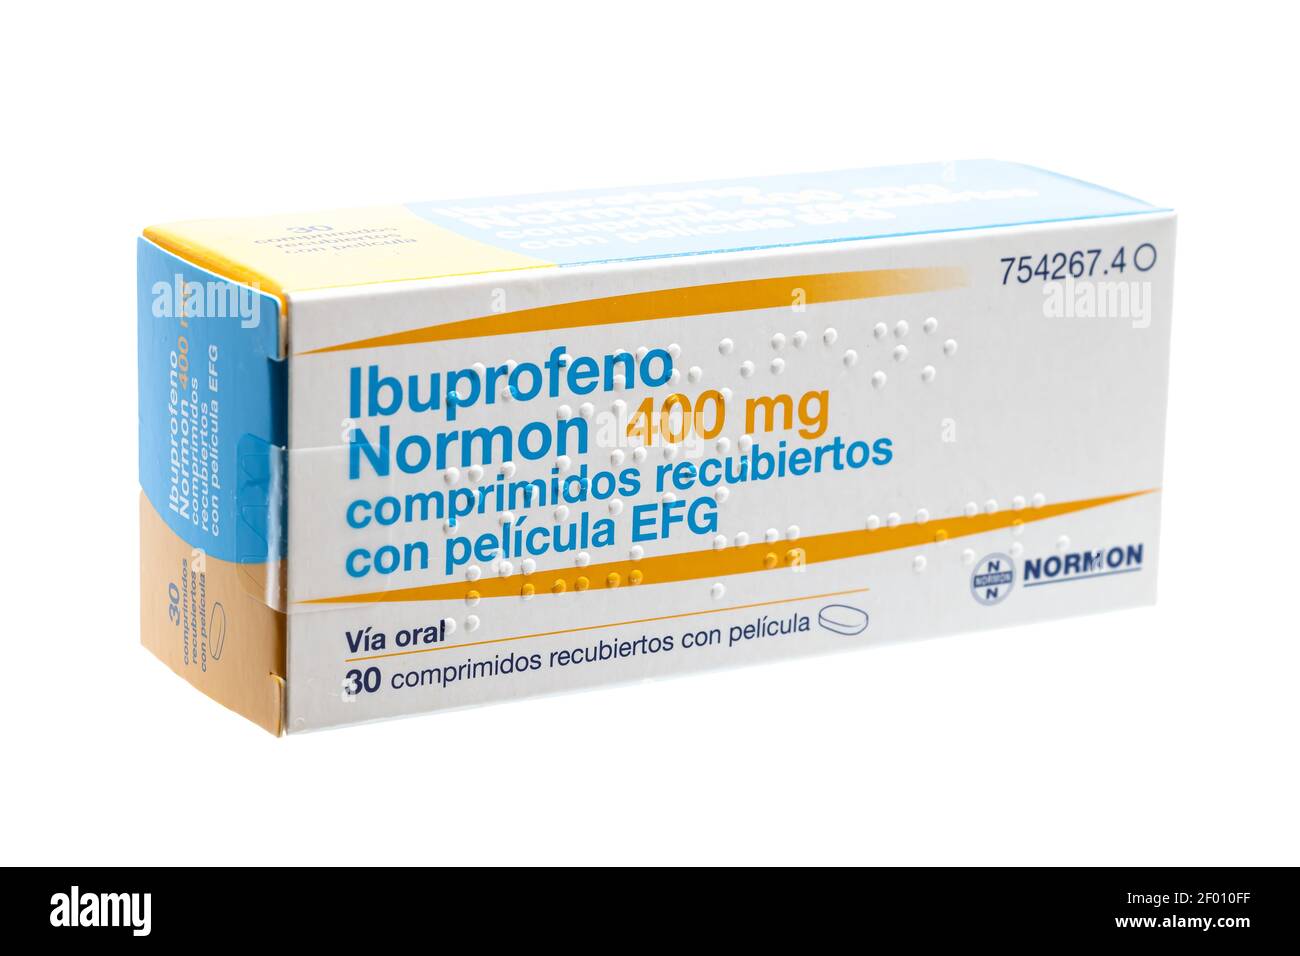 Huelva, Spanien - 6. März 2021: Spanische Box von Ibuprofen, ist ein Medikament entzündungshemmend. Verwendet für Schmerzen, Fieber und Entzündungen, schmerzhafte Menst Stockfoto